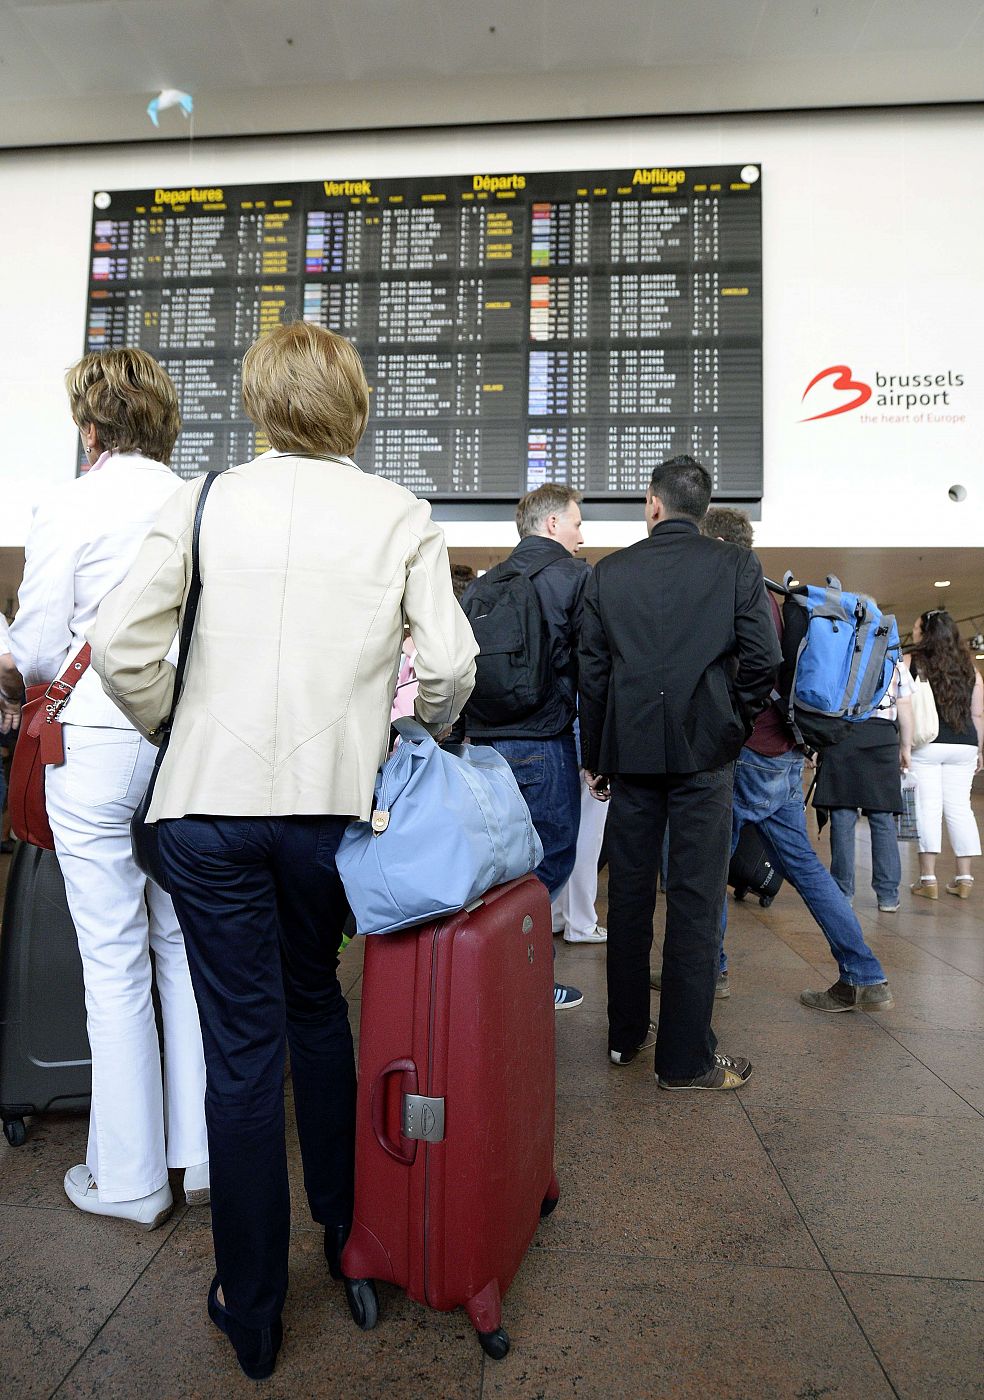 Pasajeros mirando los paneles de información del aeropuerto de Bruselas